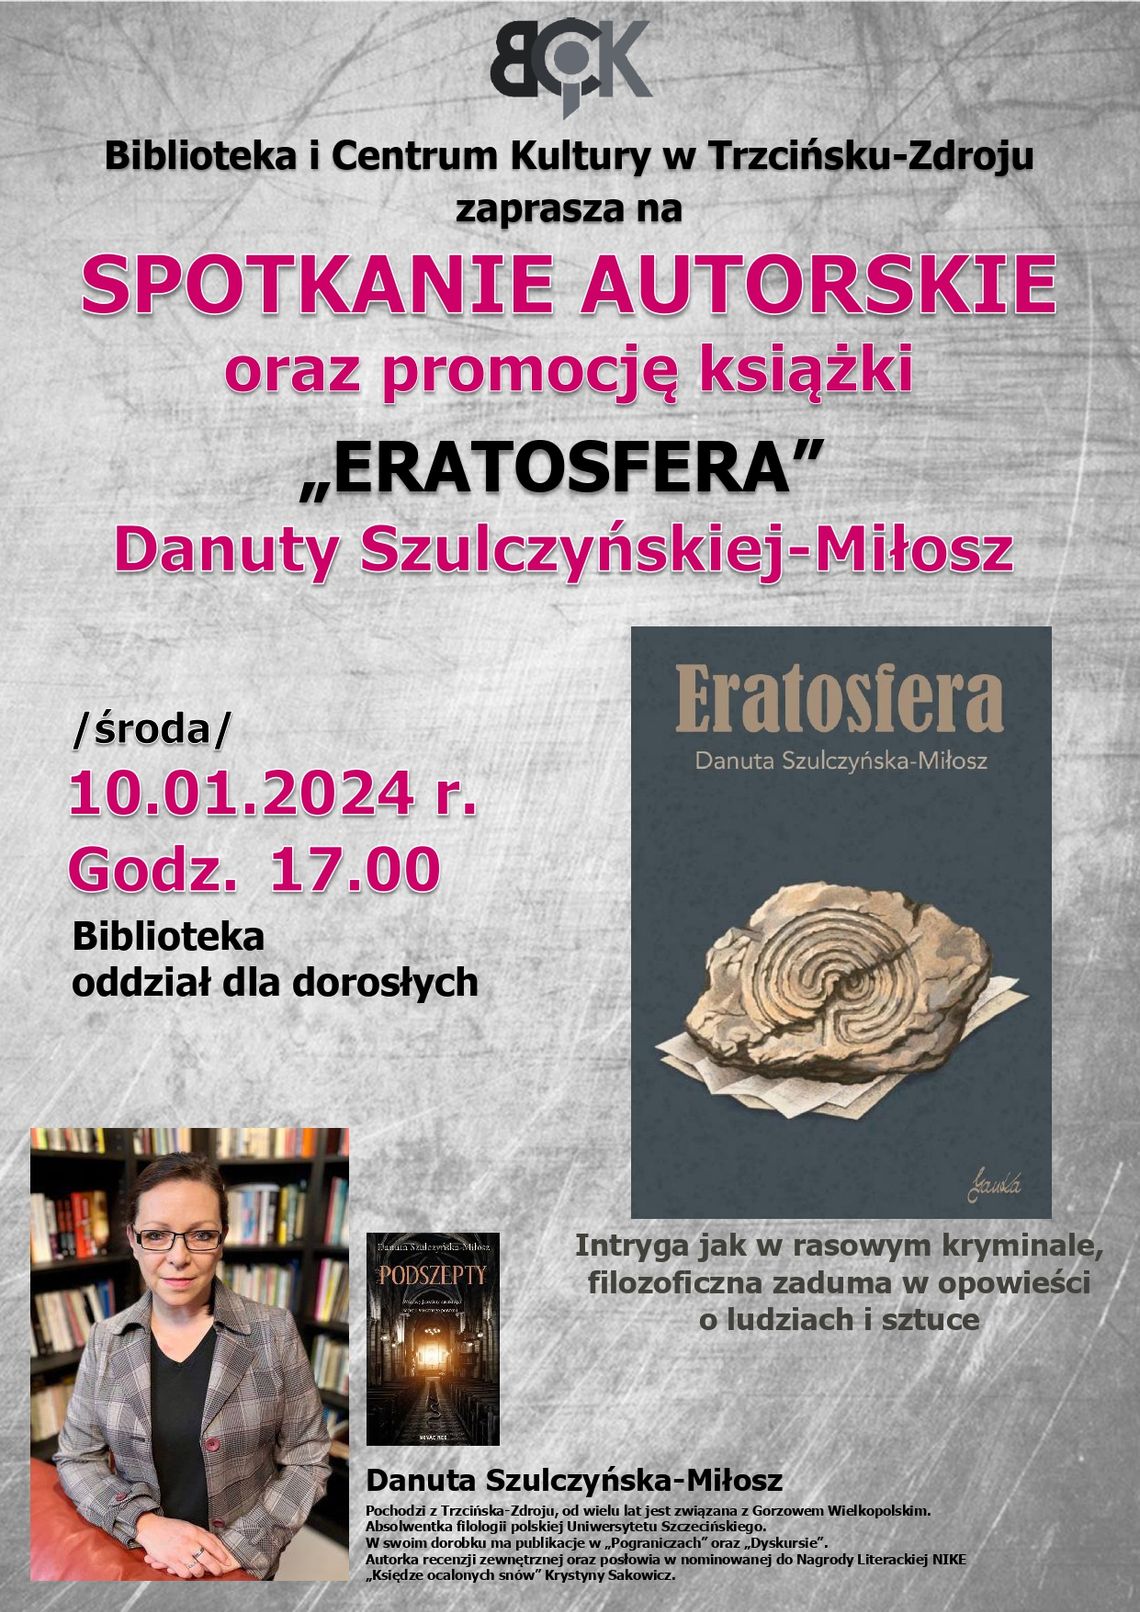 Zaproszenie na promocję książki “Eratosfera”